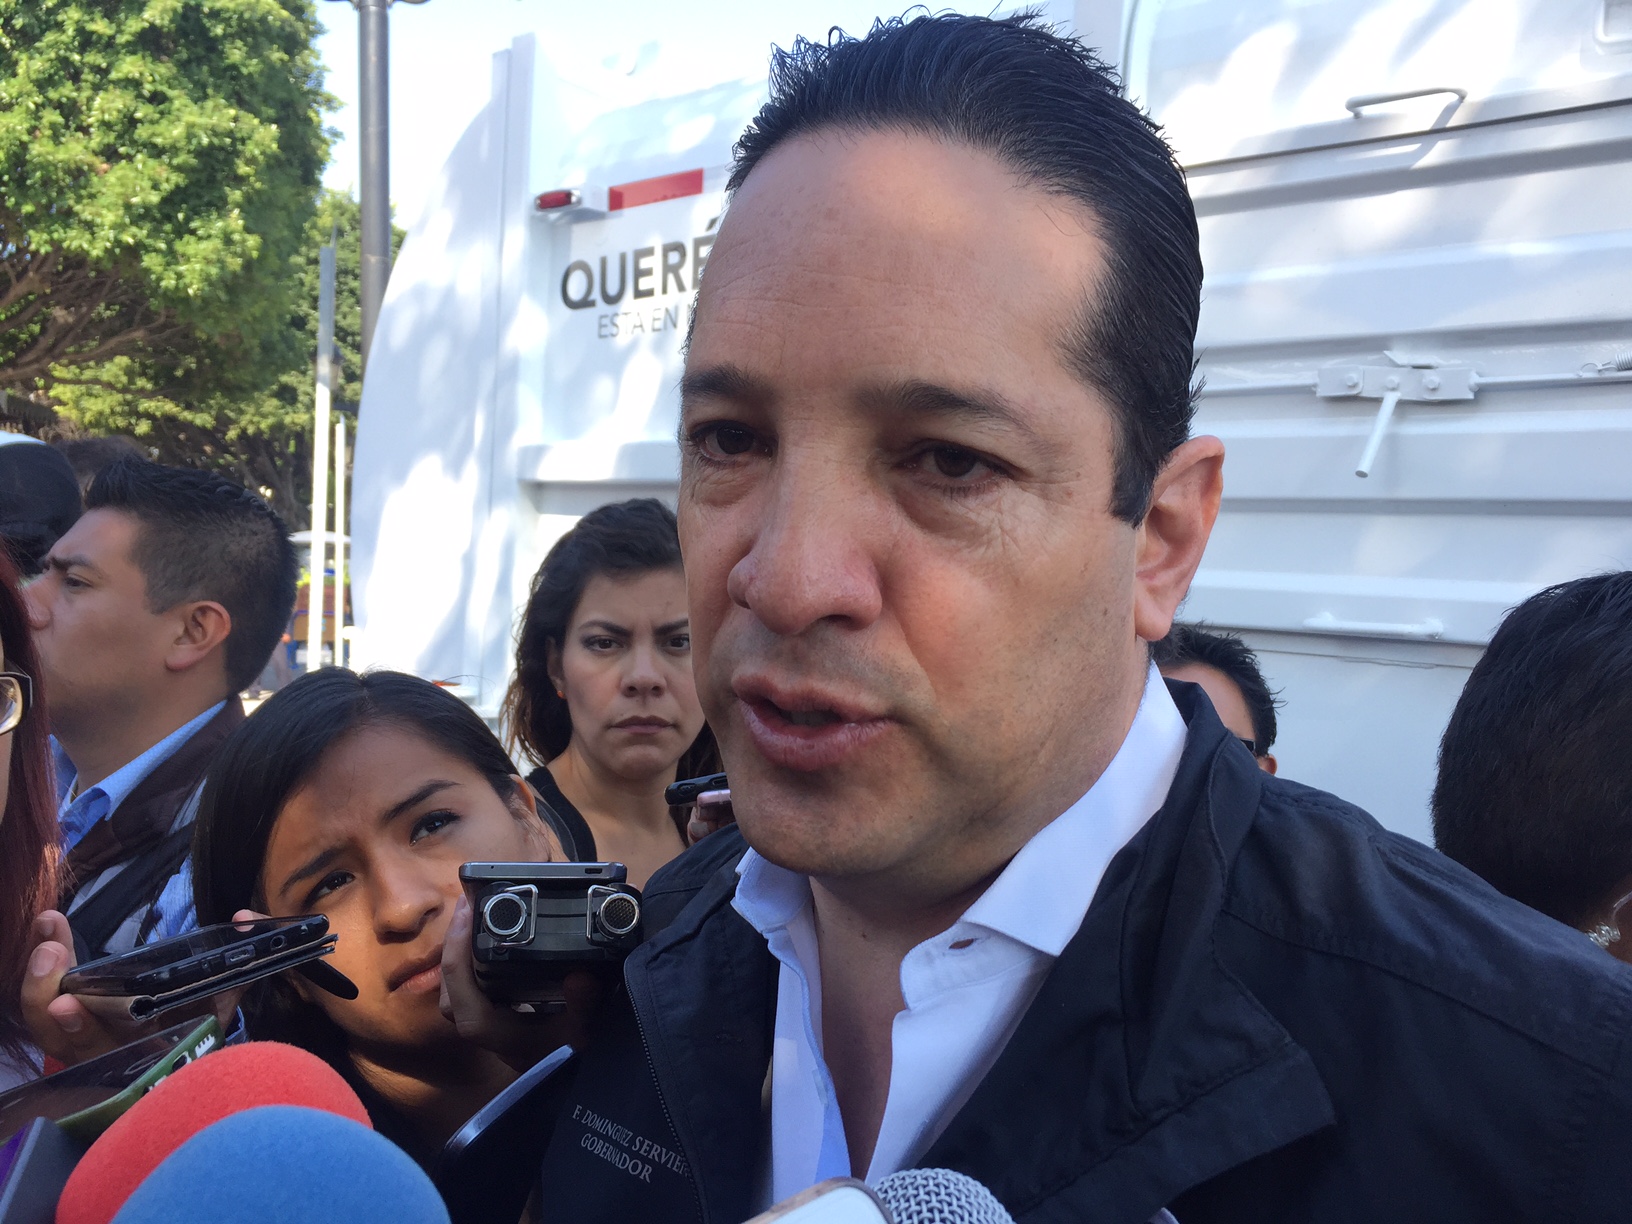  Gobierno estatal participará en diálogo entre habitantes de E. Montes y el municipio de Querétaro